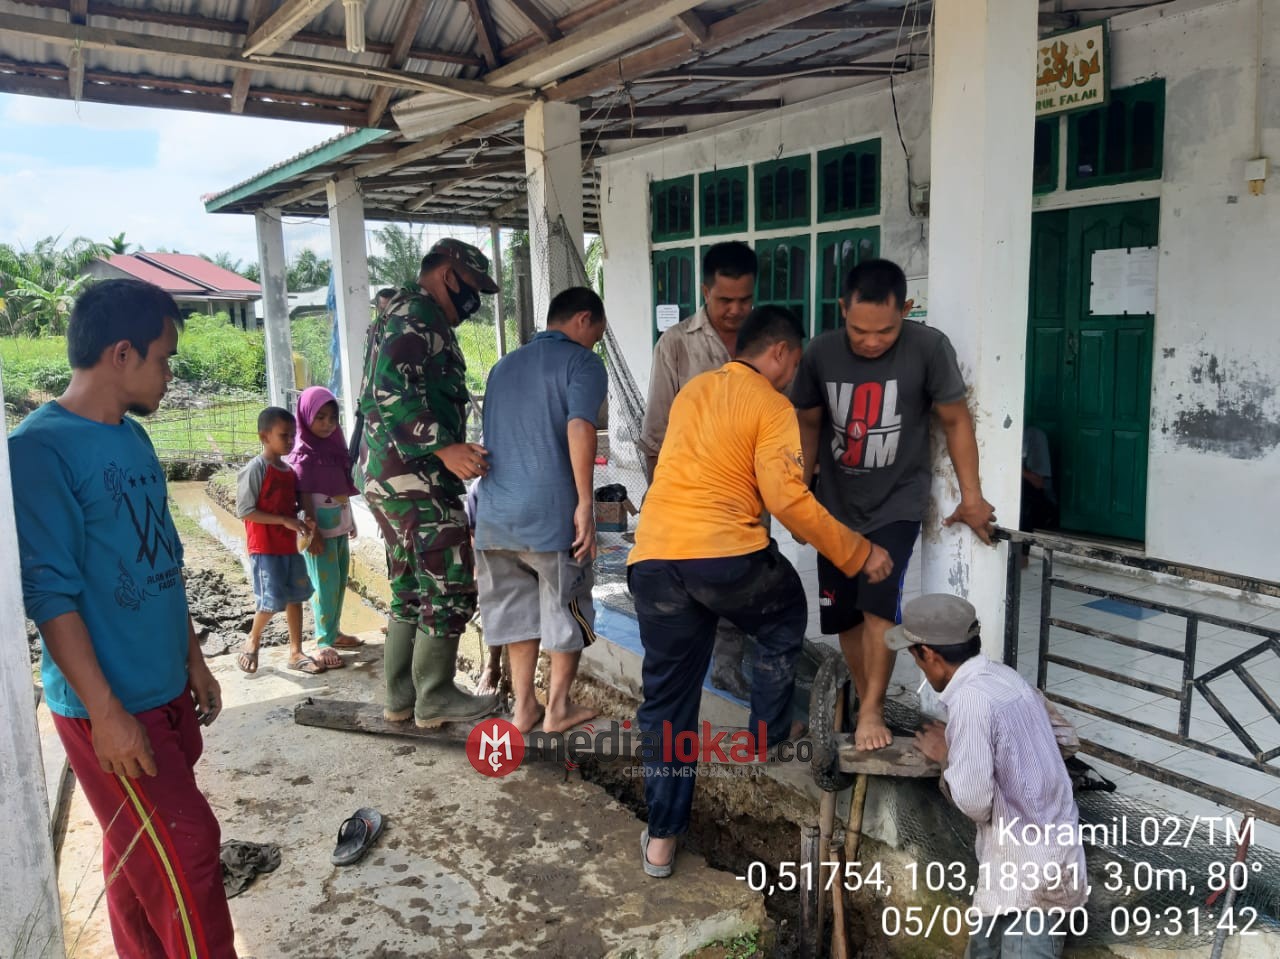 Bersama Warga, Babinsa 02/Tanah Merah Laksanakan Pengecoran di Surau Pusaran Enok